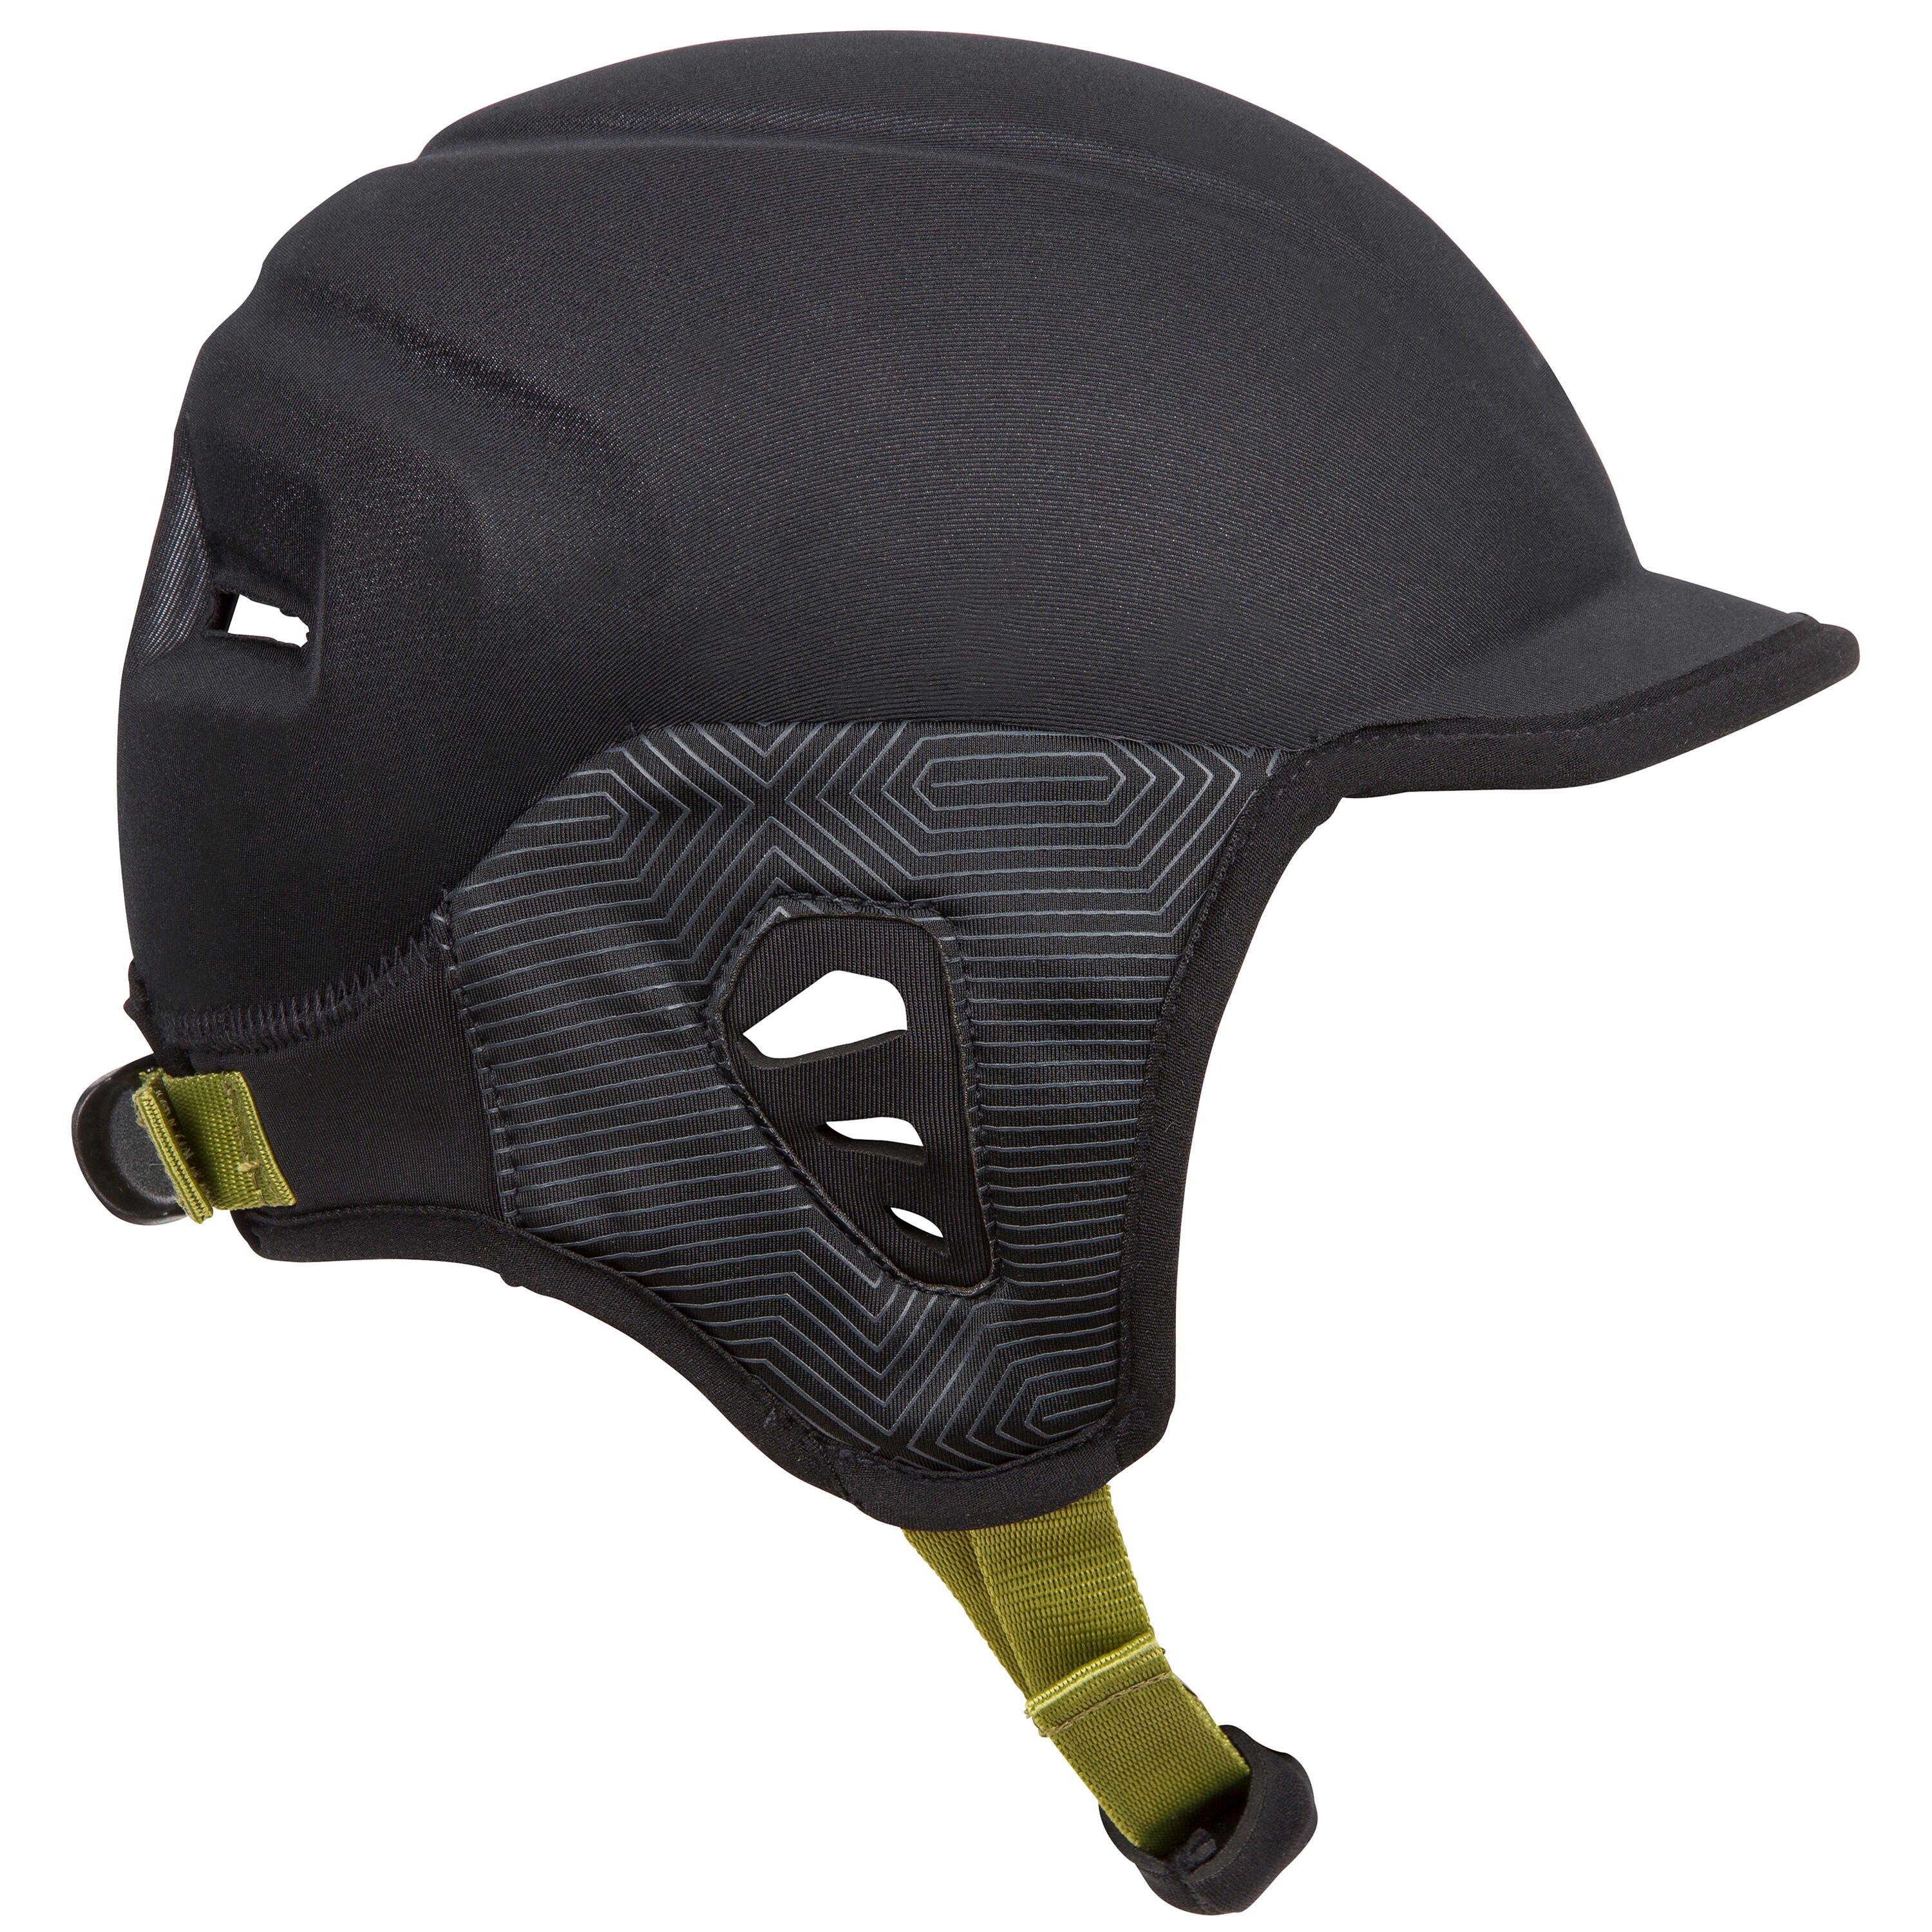 Helmet for surfing. black 5/9